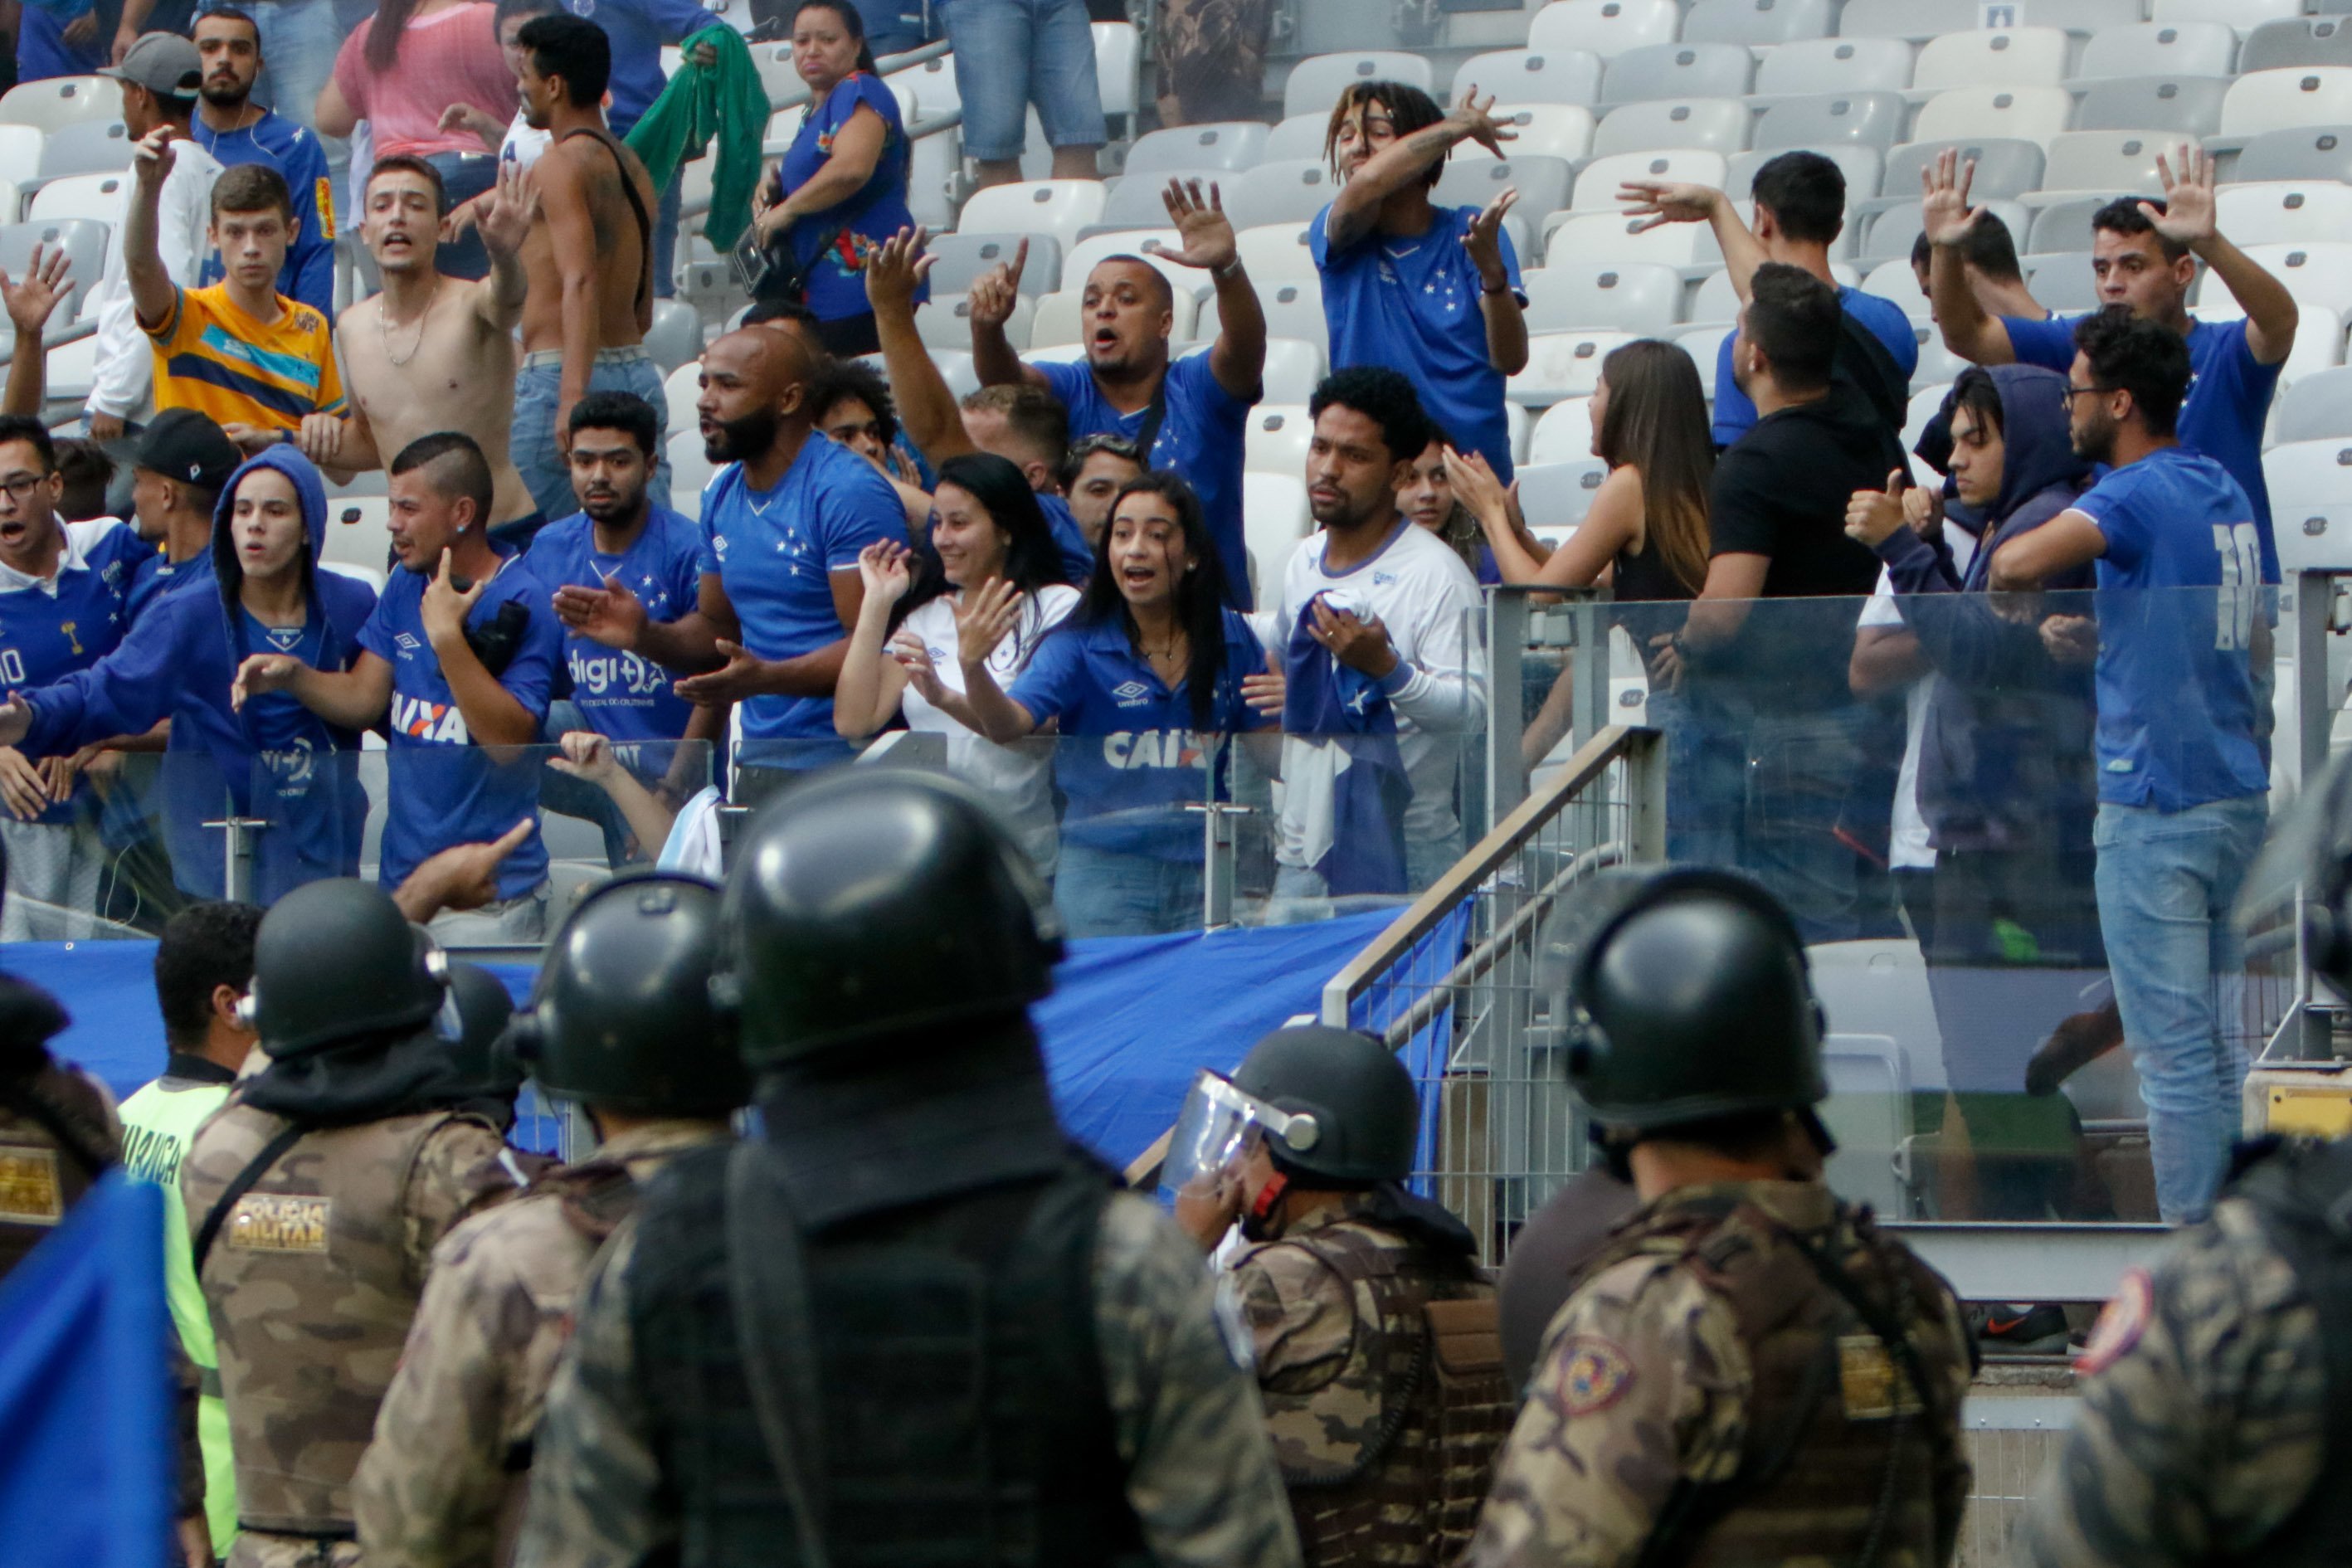 Cruzeiro - Em 2019, a Raposa fez uma campanha turbulenta e com muitos problemas fora do campo, que refletiram diretamente nas atuações da equipe. Com problemas financeiros, o clube foi rebaixado e segue na Série B.